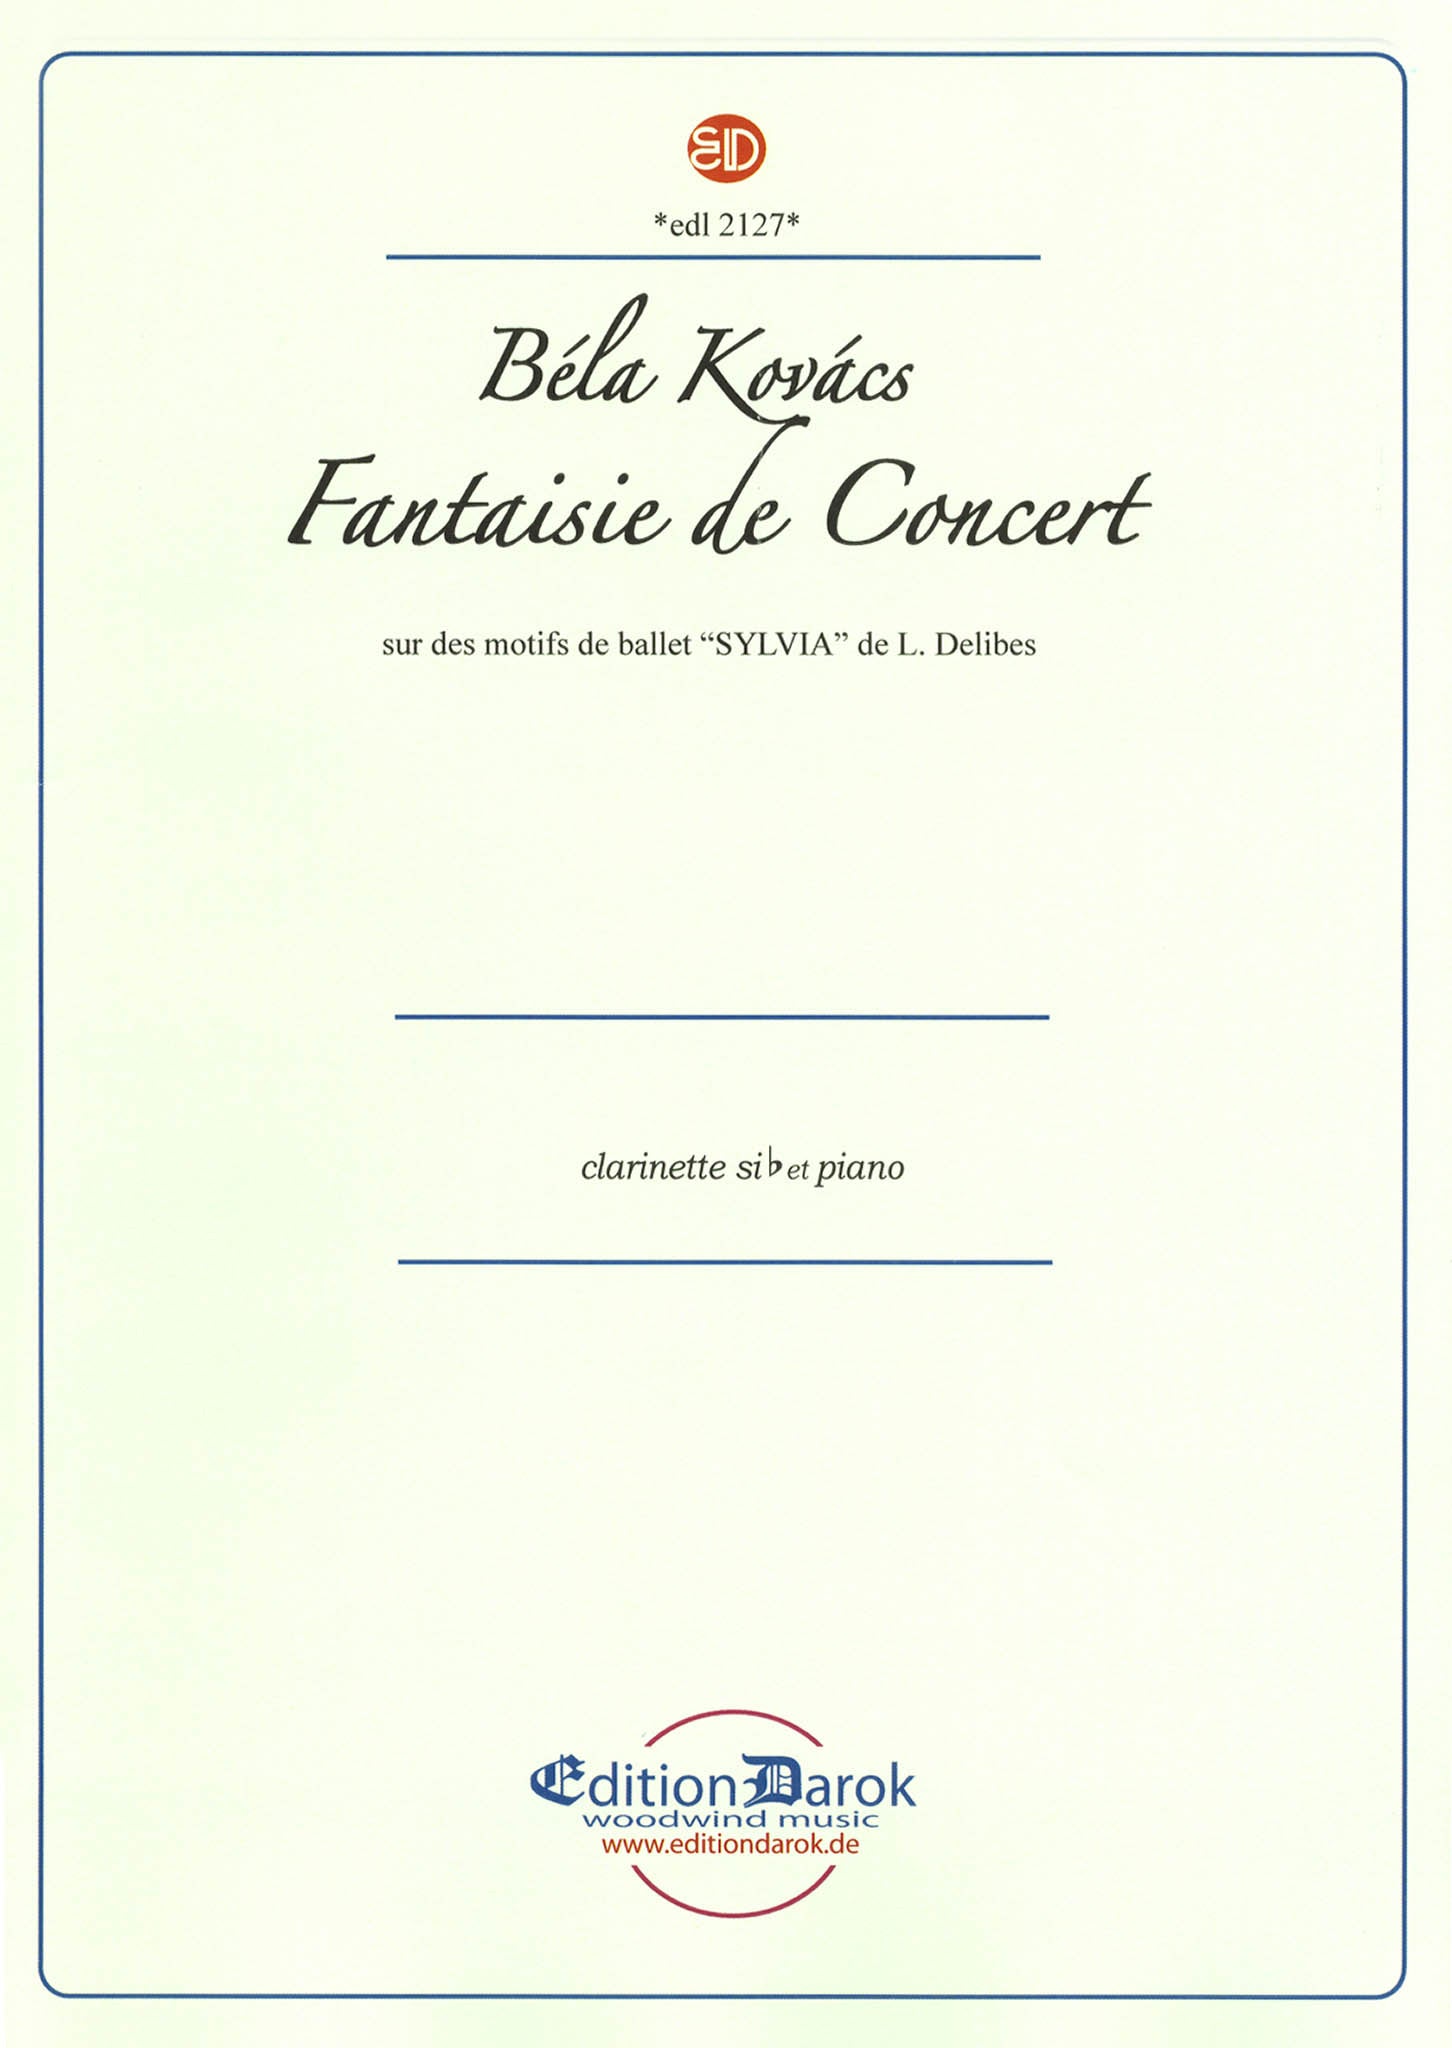 Kovács Concert Fantasy on Delibes Sylvia Ballet Cover